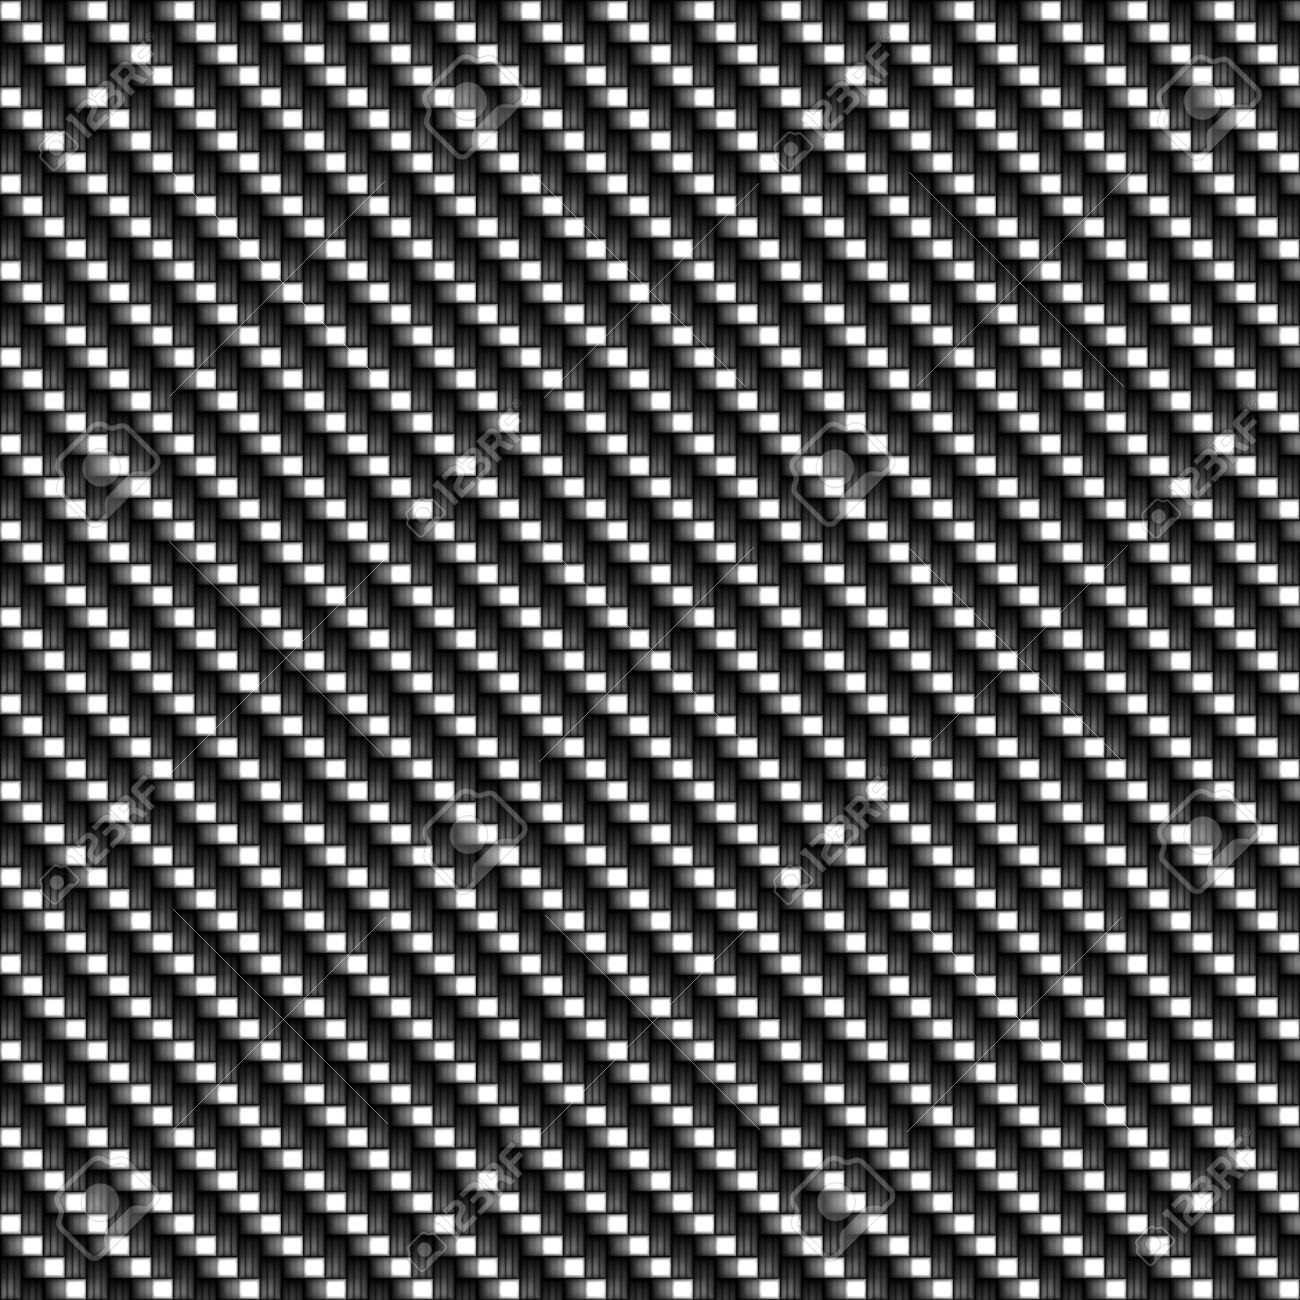 29 Carbon Fiber Textures Patterns Backgrounds